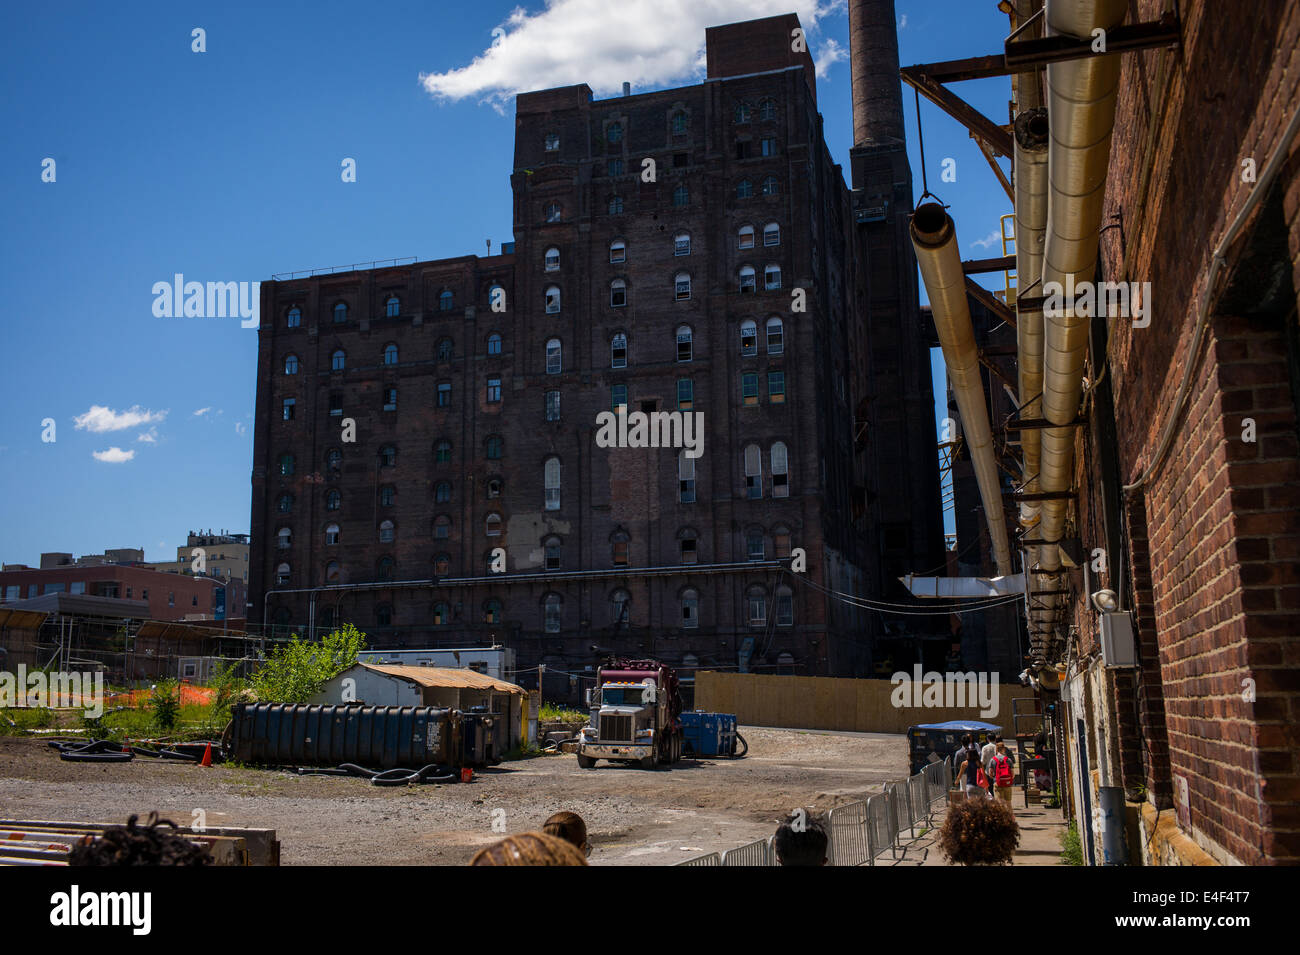 Un mattone complesso conosciuto come il Domino raffineria di zucchero si erge sopra un vuoto molto in Williamsburg, New York. Foto Stock